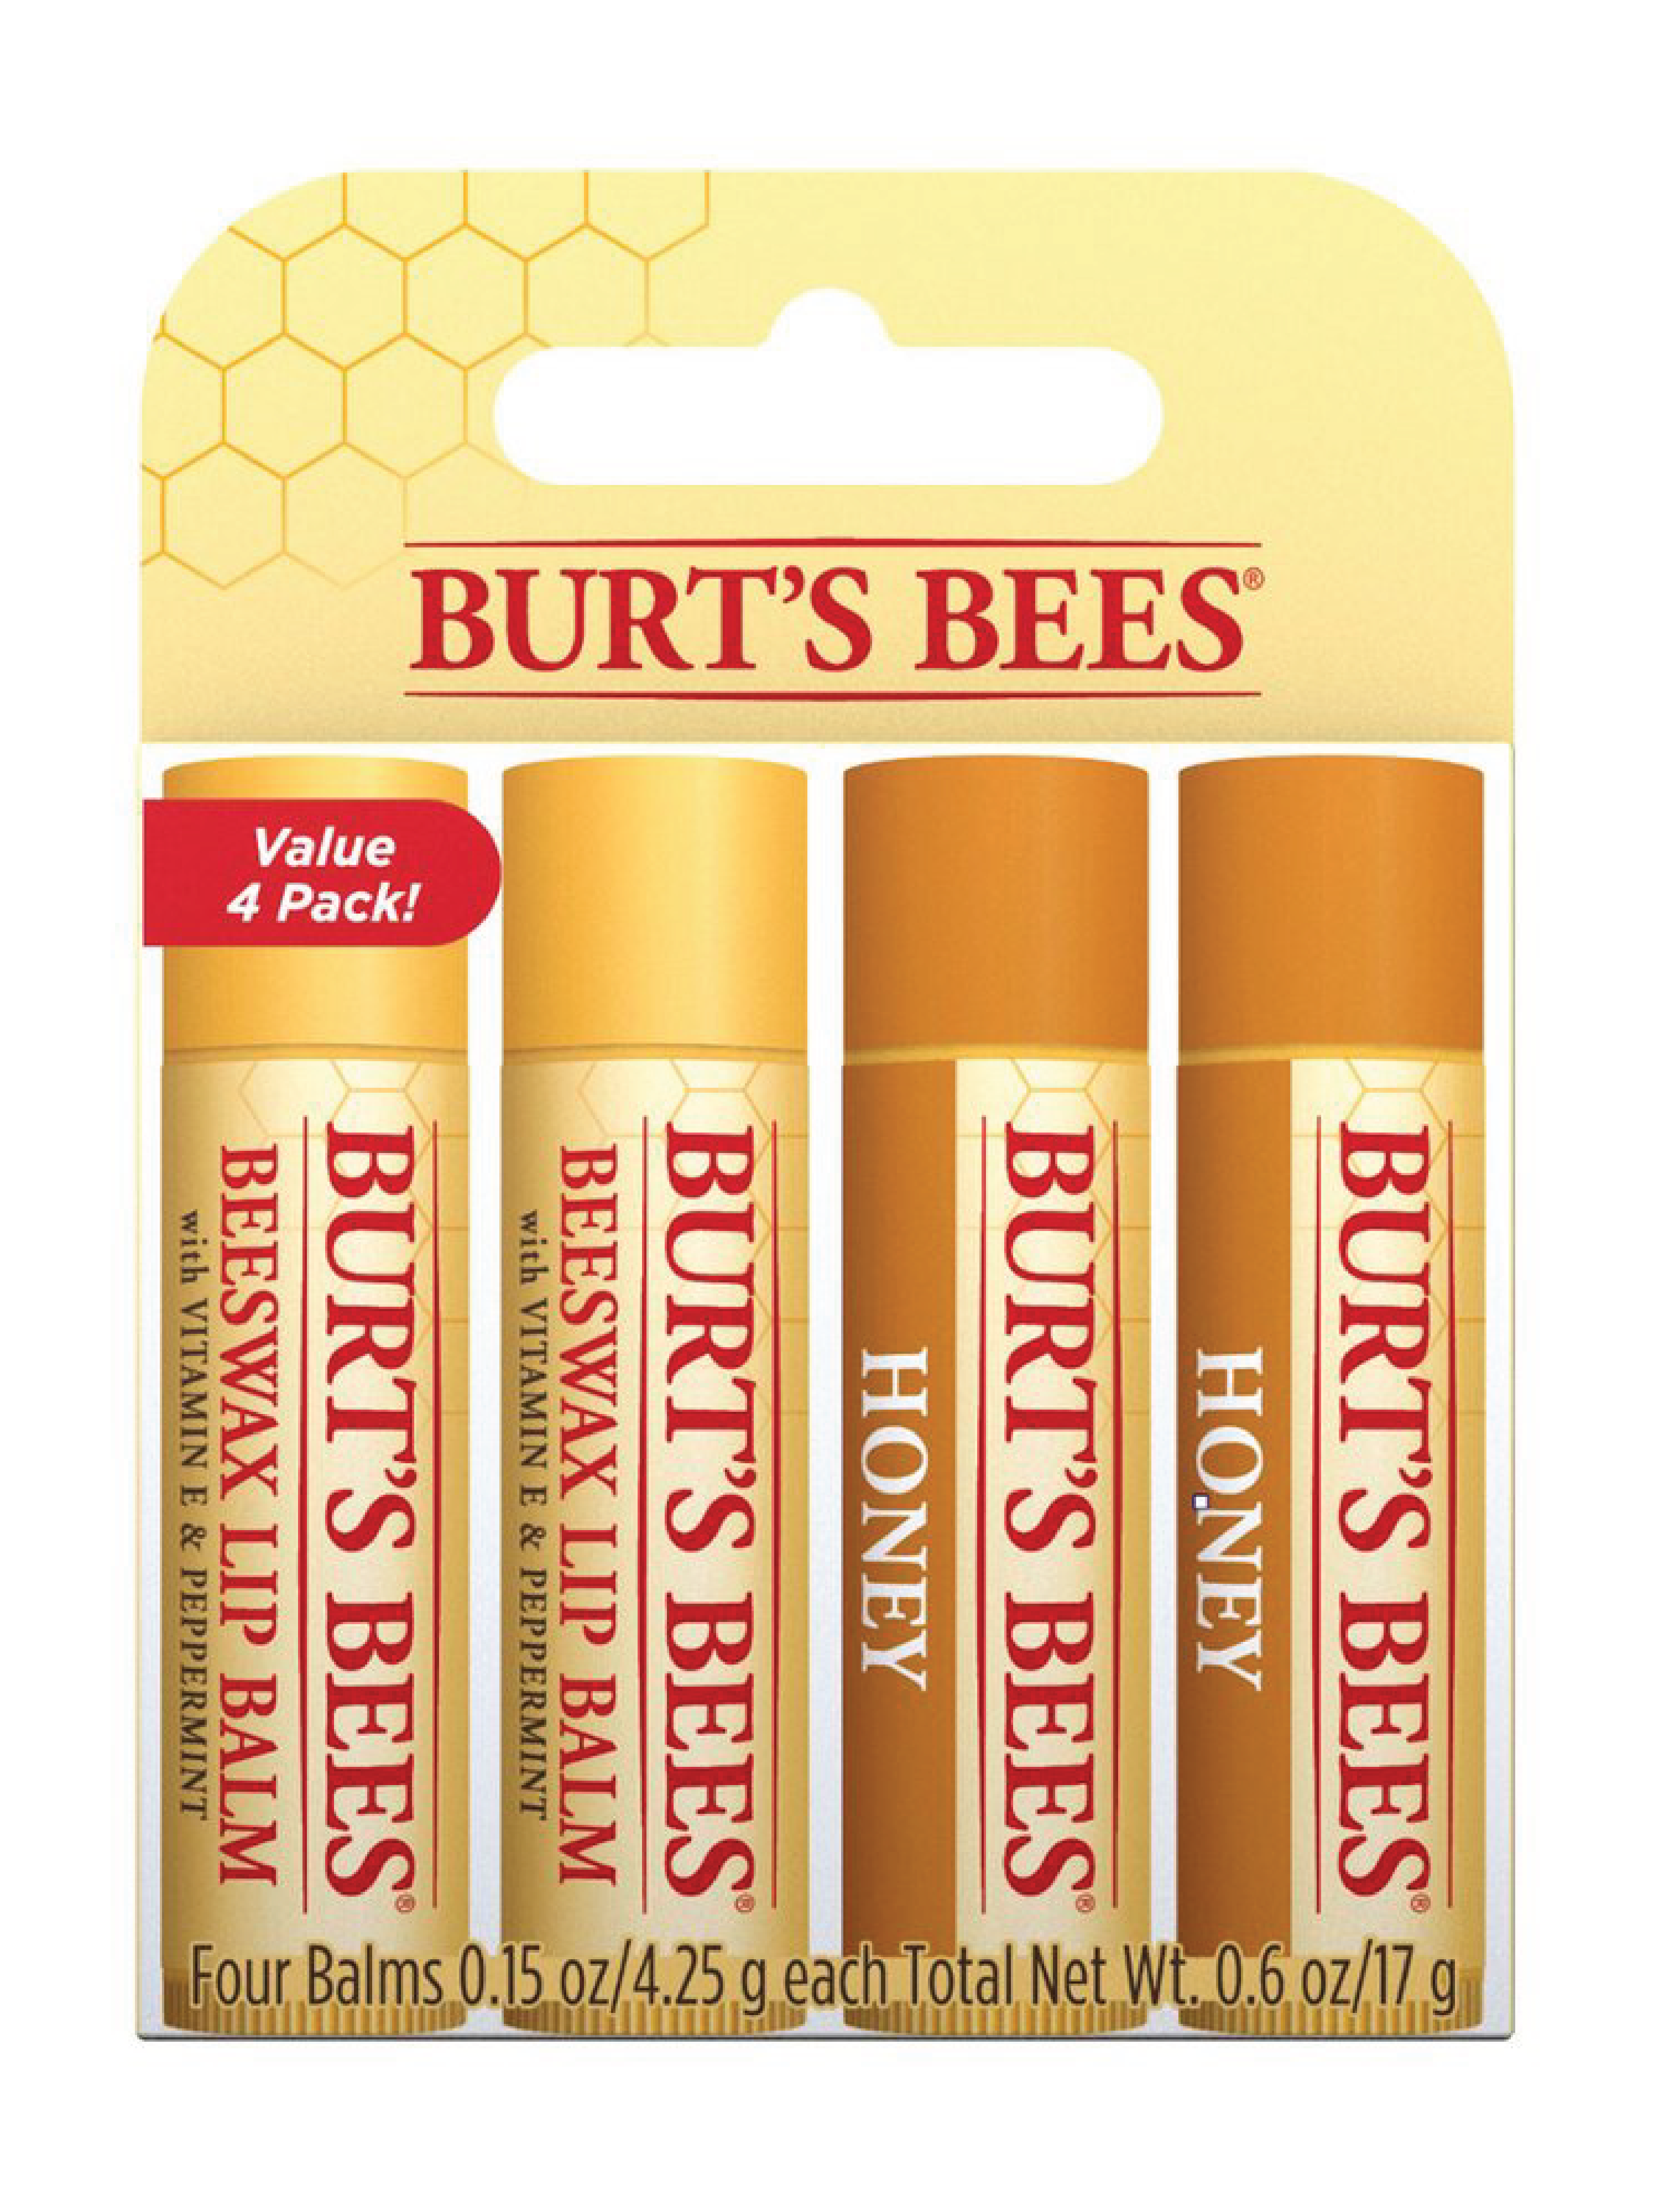 Burt's Bees Beeswax & Honey Quad Pack, 4 x 4,25 g